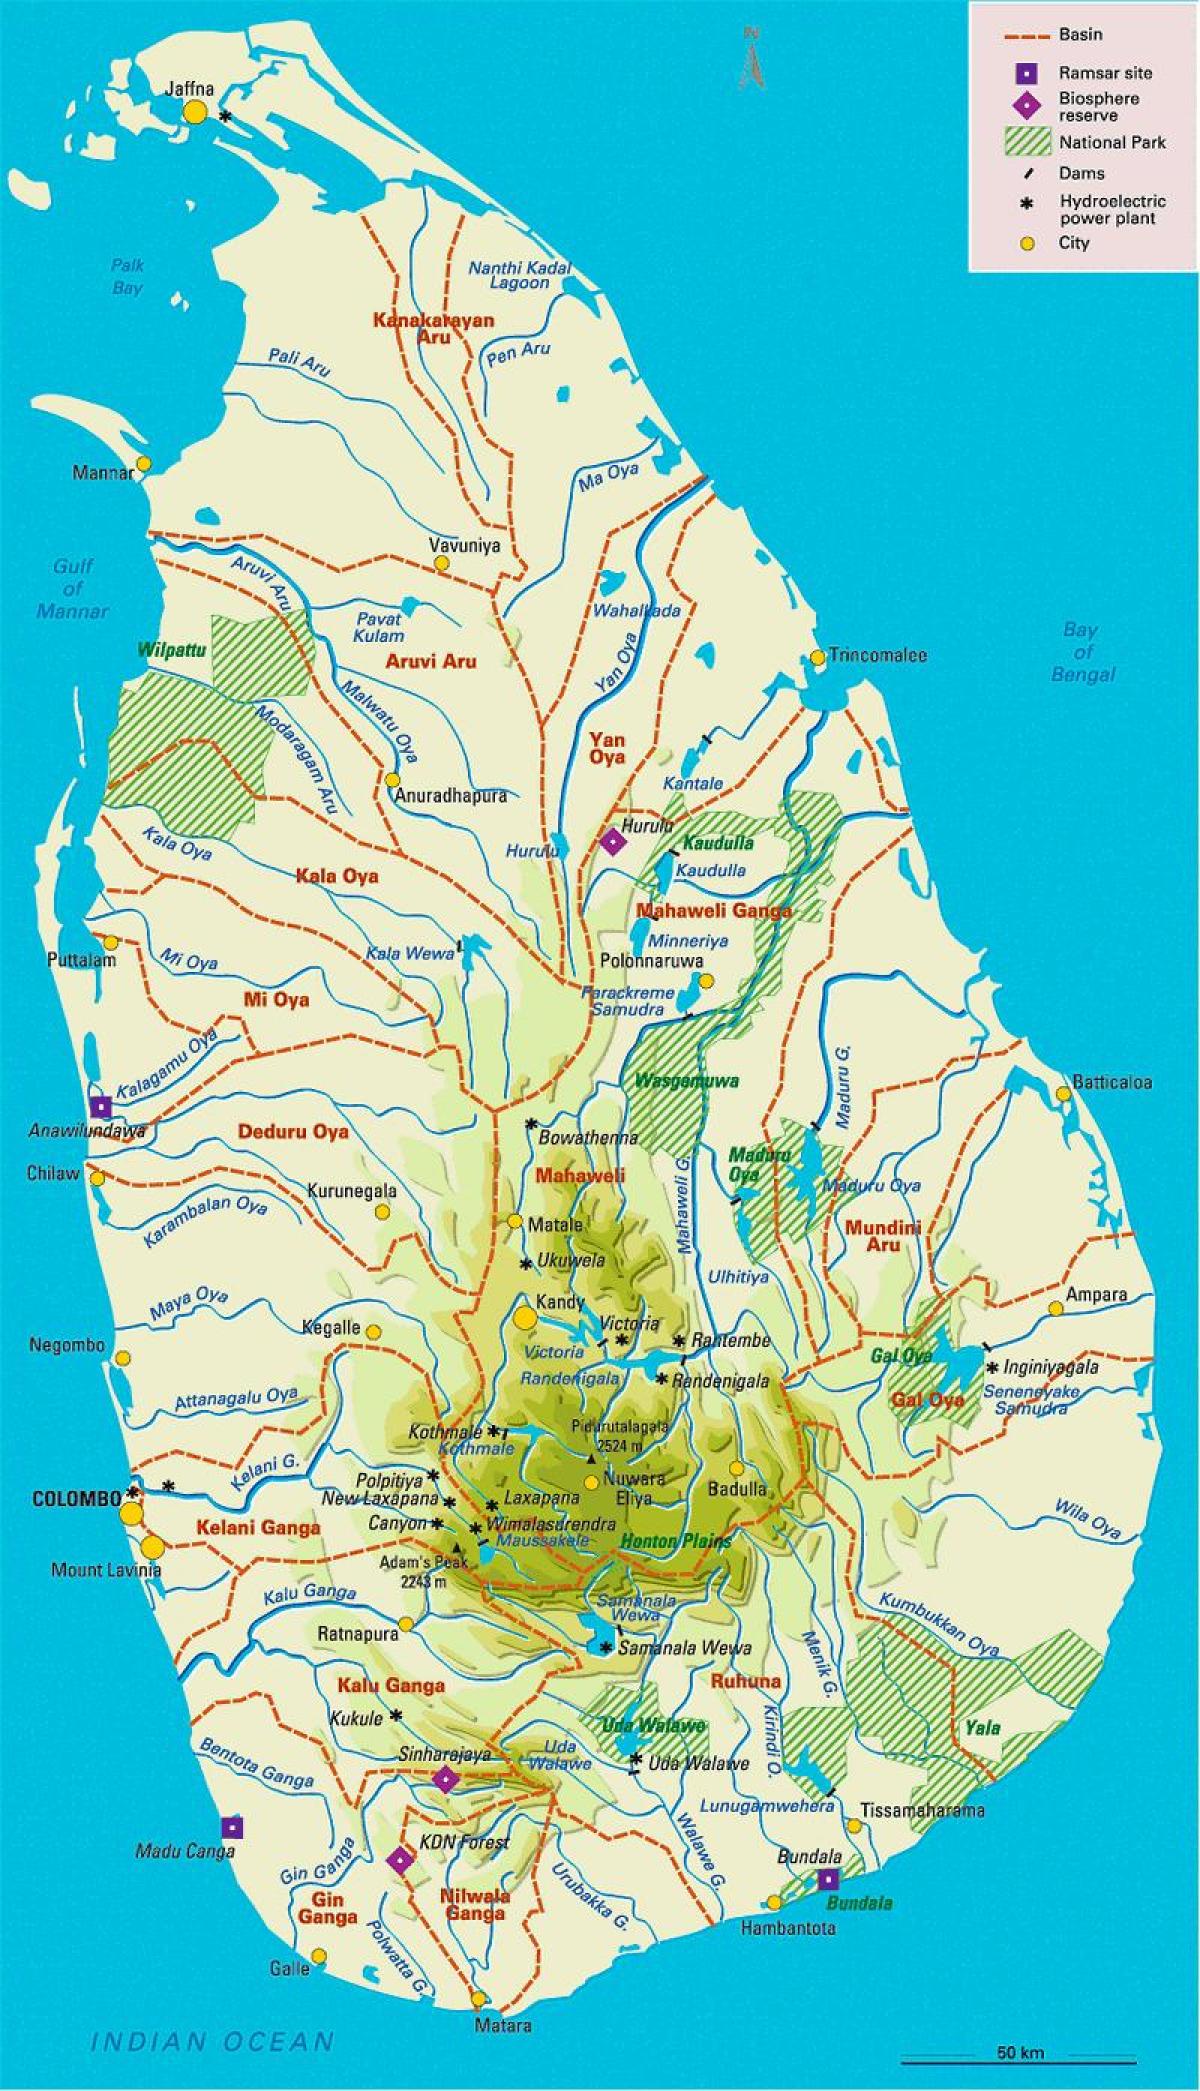 Sri Lanka ríos mapa en tamil